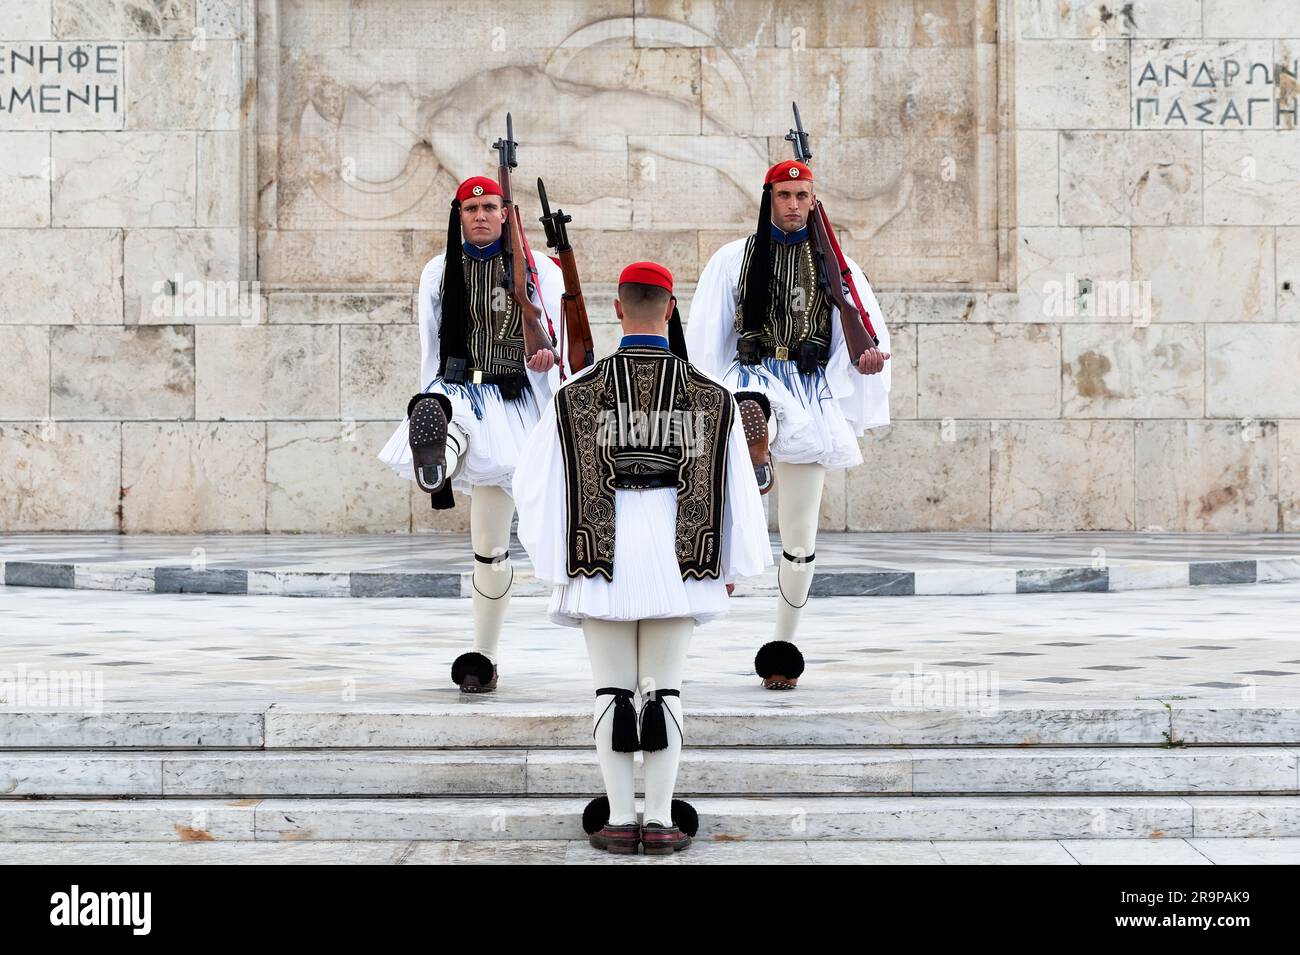 Athen, Griechenland - 26. Dezember 2019: Zwei Mitglieder der Präsidialgarde Soldaten (evzone) im Stadtzentrum der griechischen Hauptstadt - Konzeptgeschichte Stockfoto